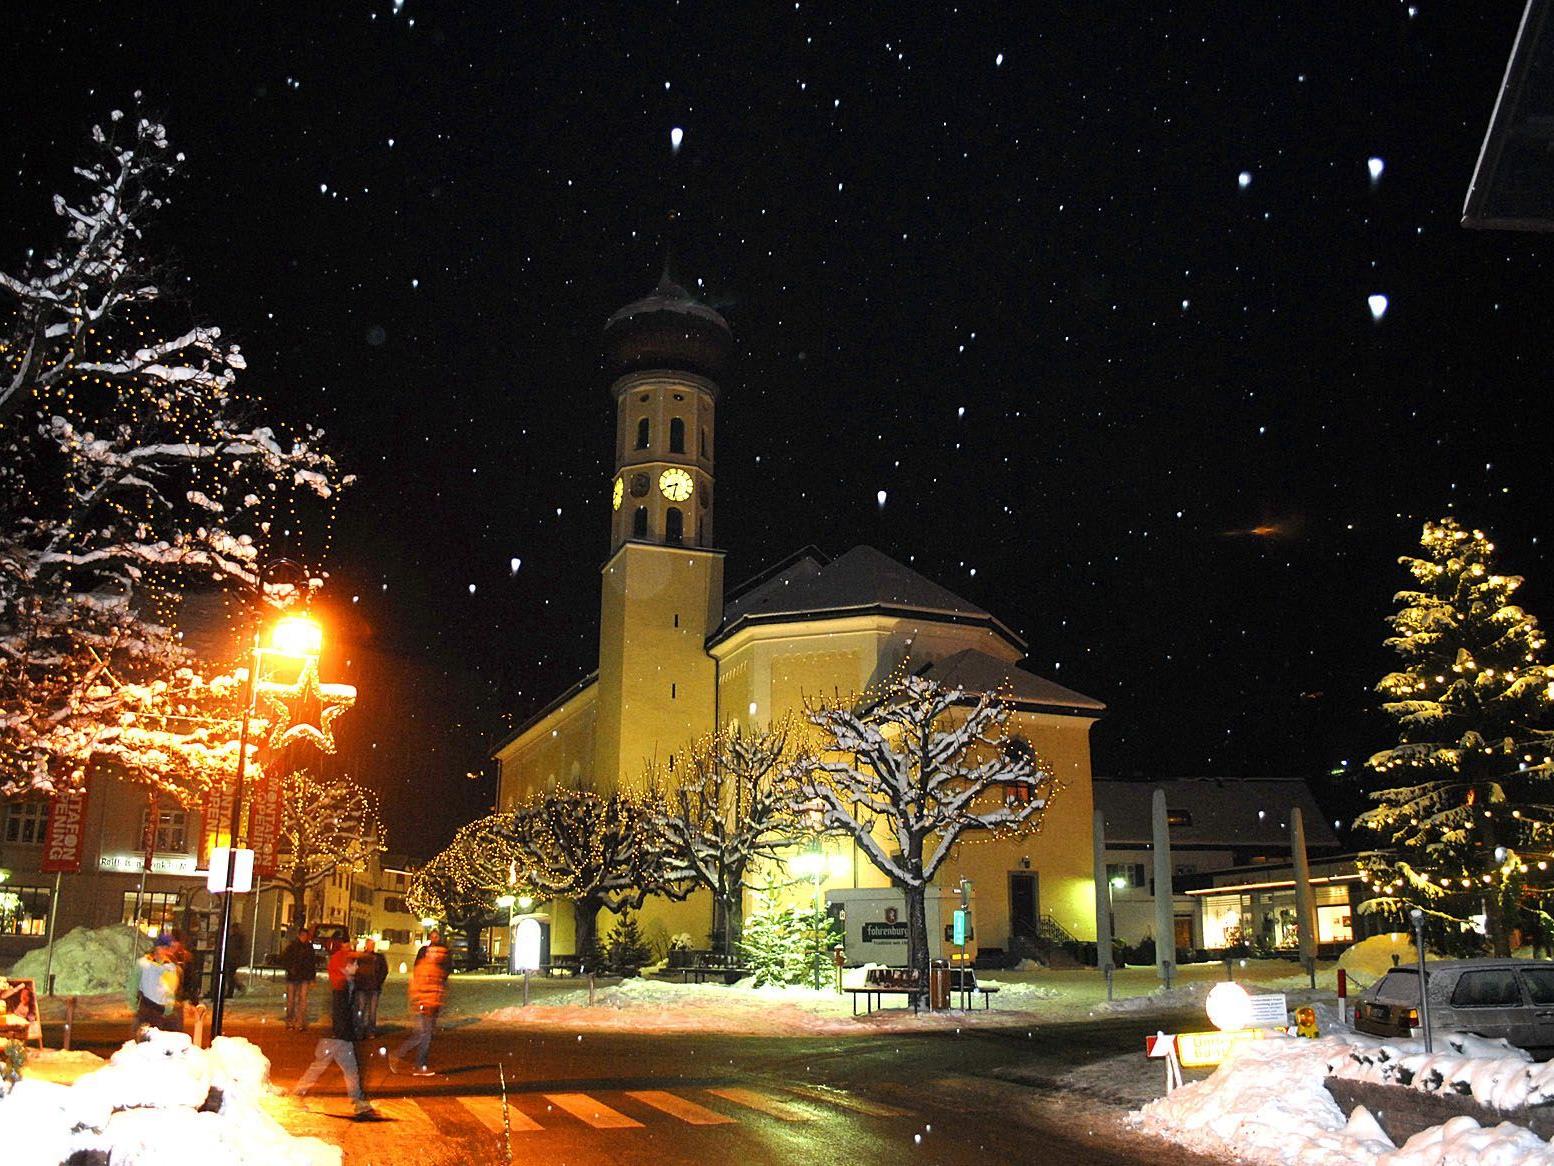 Die Pfarrkirche St. Jodok in Schruns am Freitag, dem 7. Dezember 2012, abends